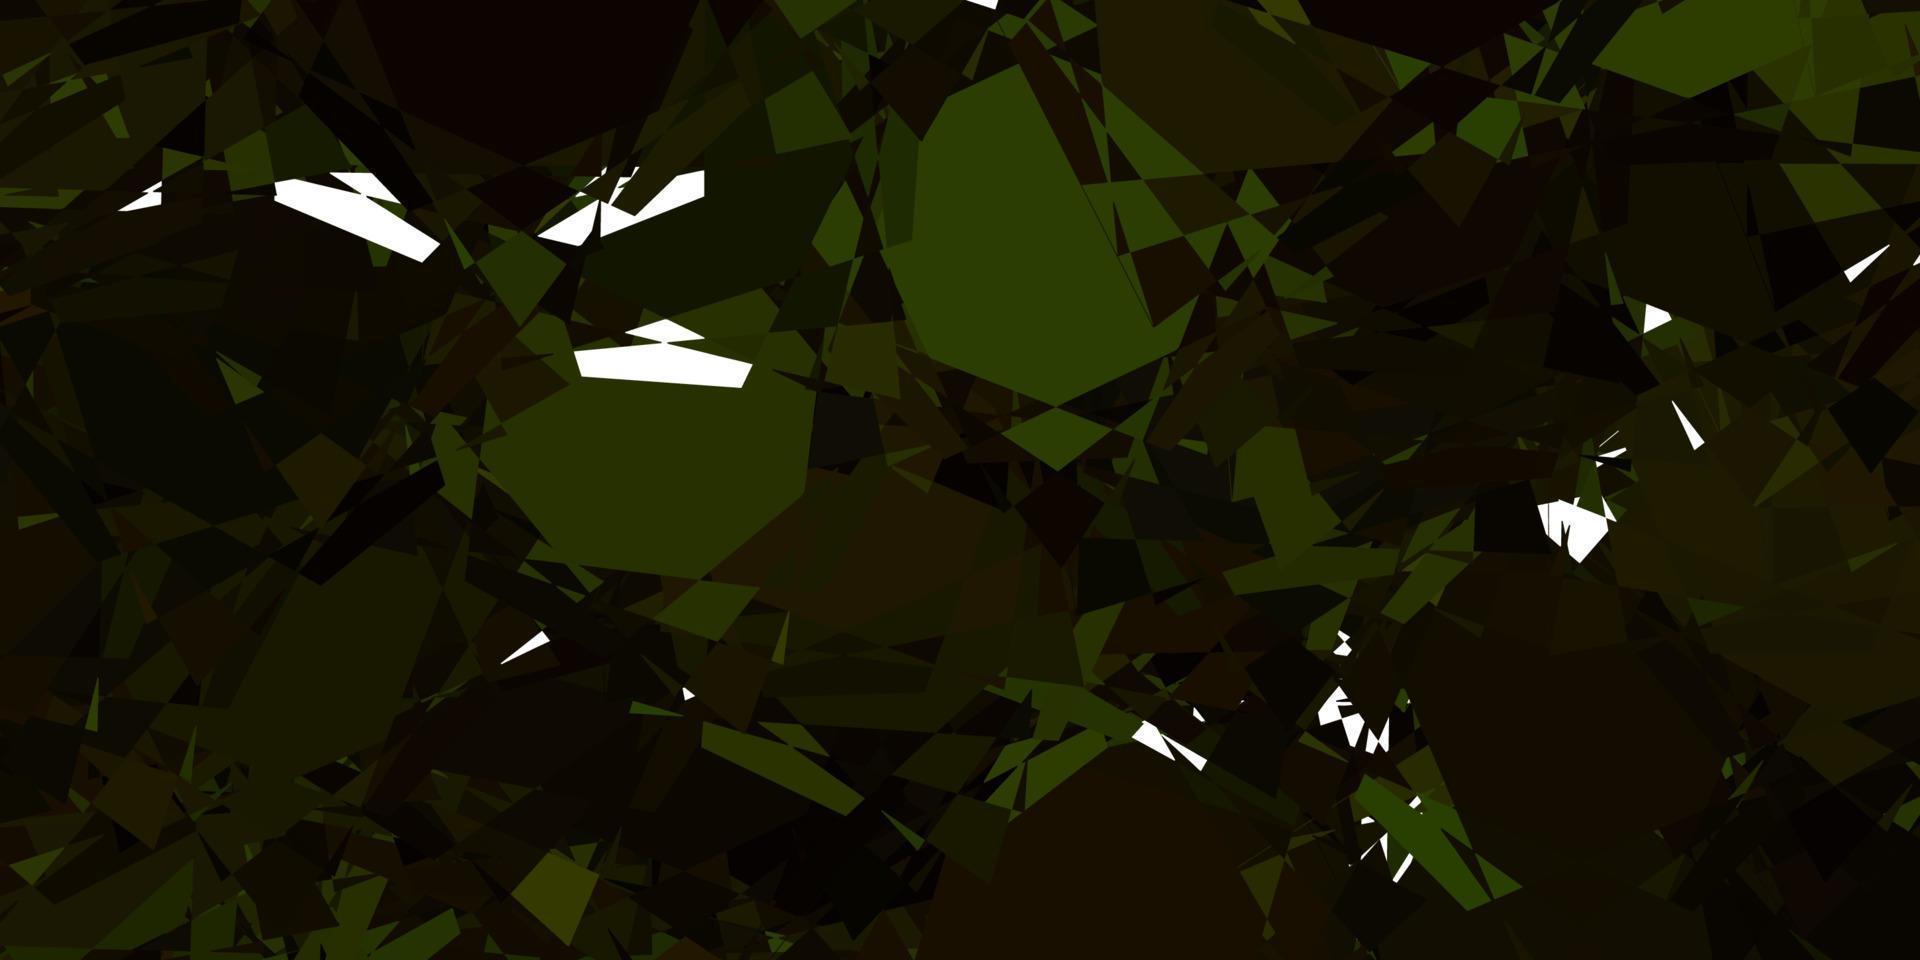 sfondo vettoriale verde chiaro, giallo con forme poligonali.